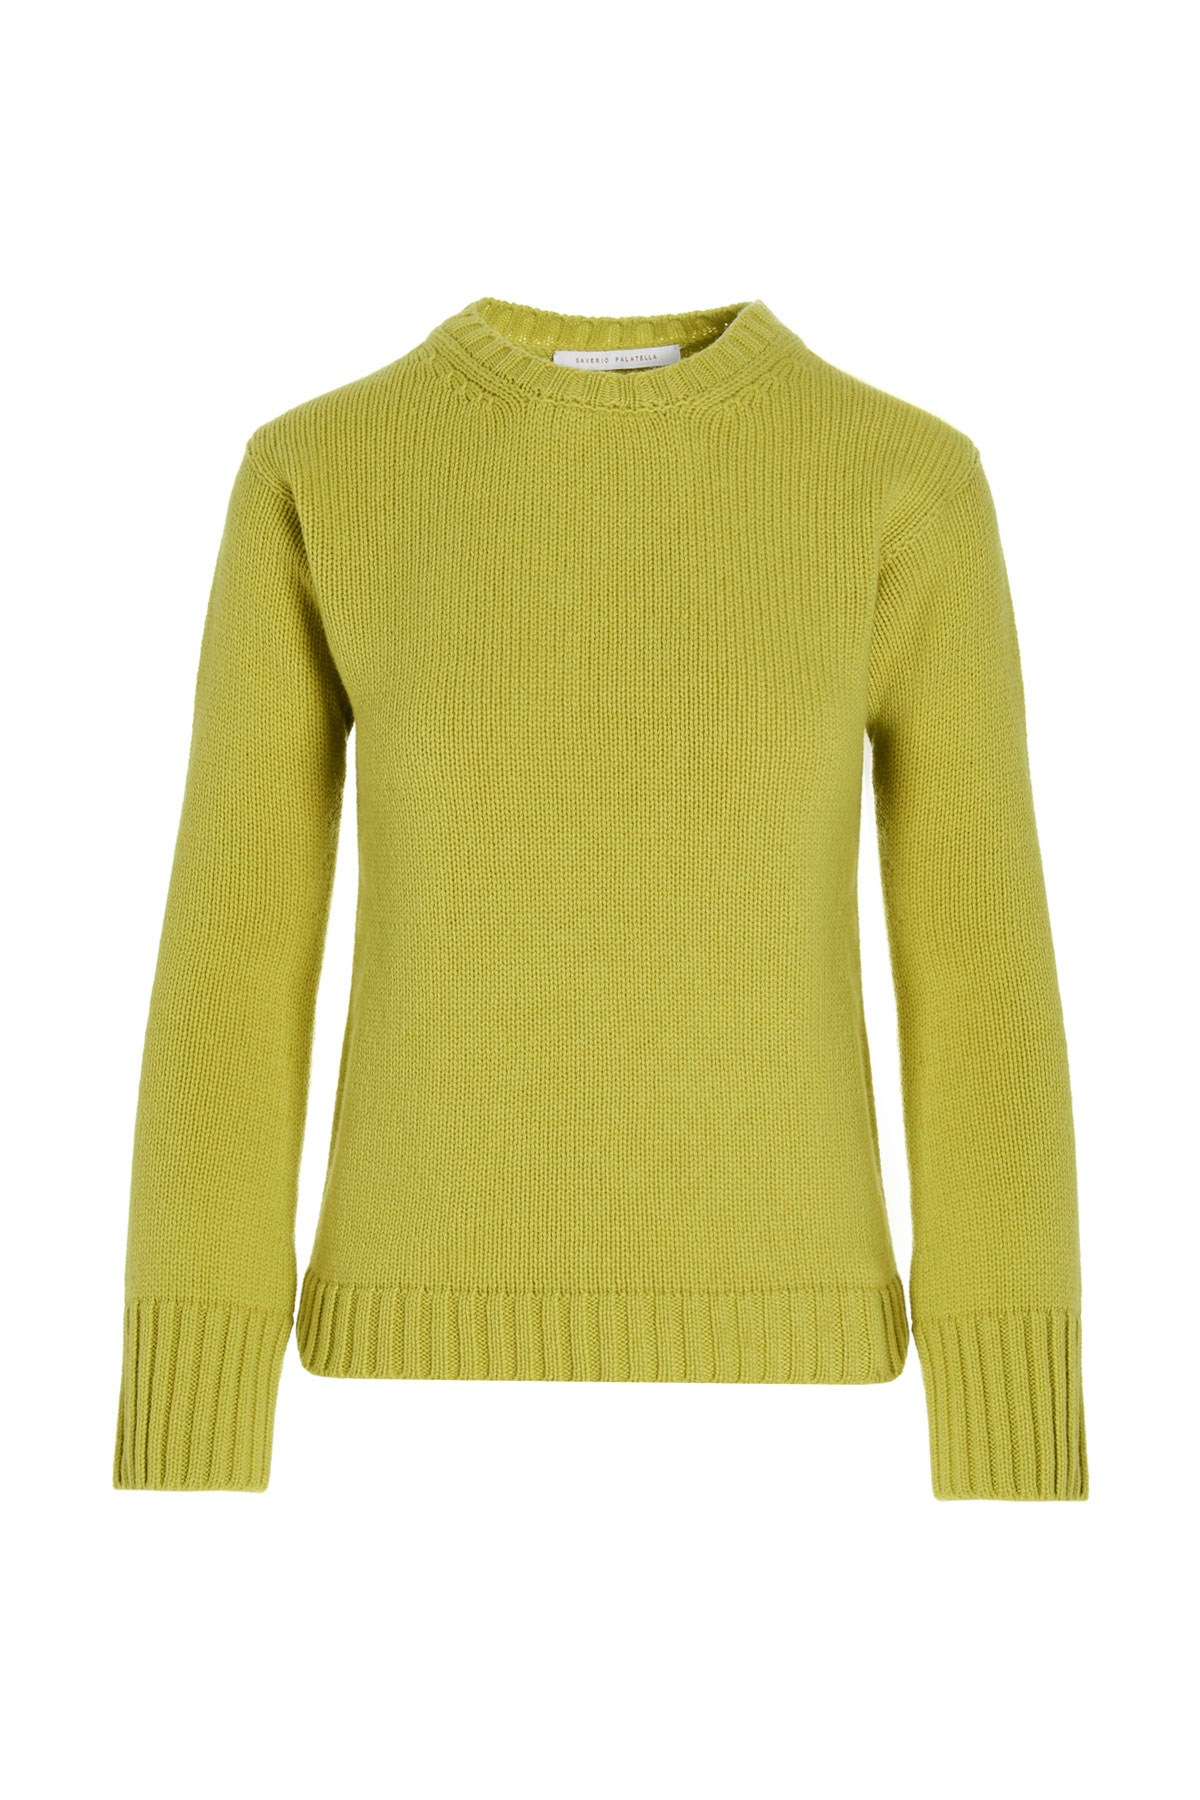 SAVERIO PALATELLA Basic Cashmere Sweater